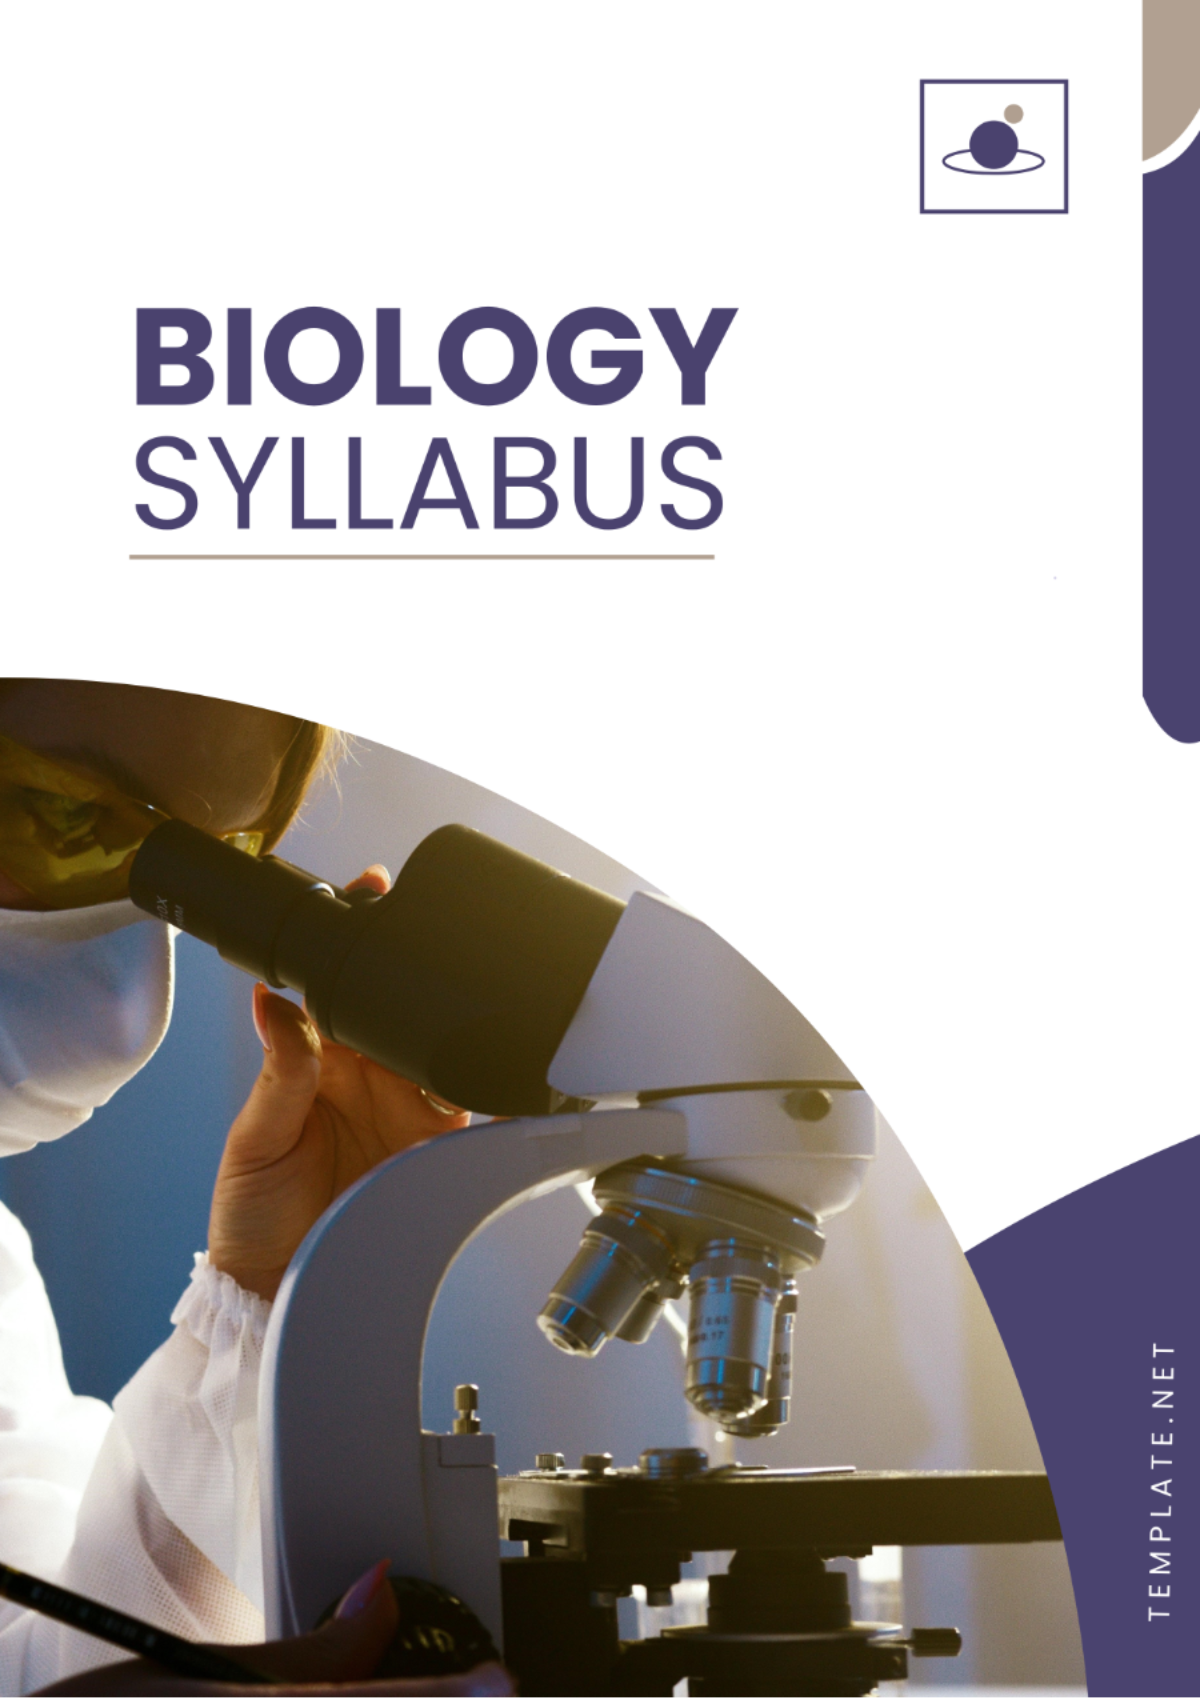 Free Biology Syllabus Template